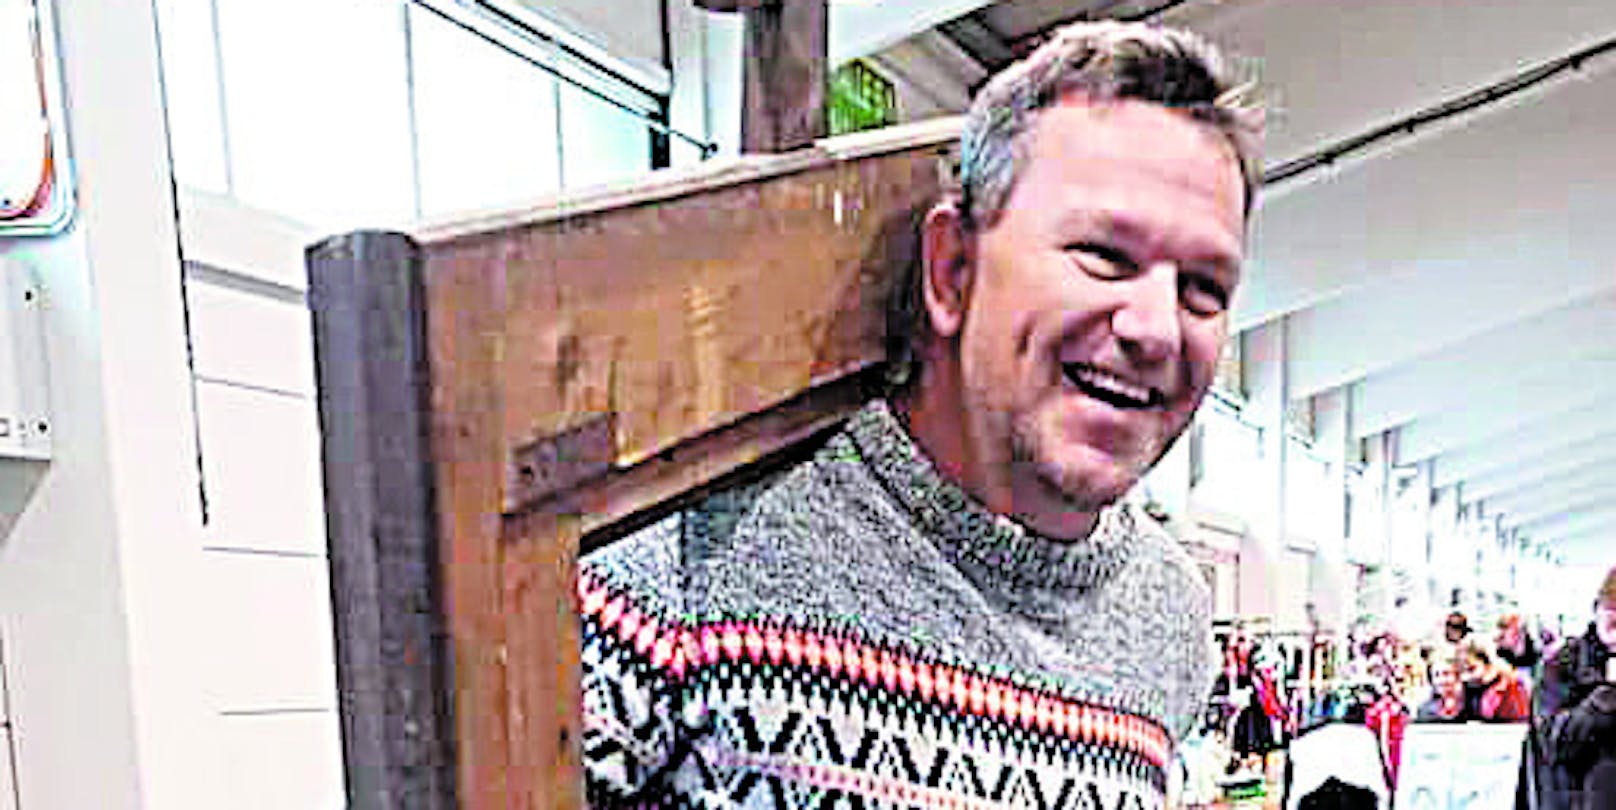 ATV-Star Günther Nussbaum liebt Flohmärkte über alles.